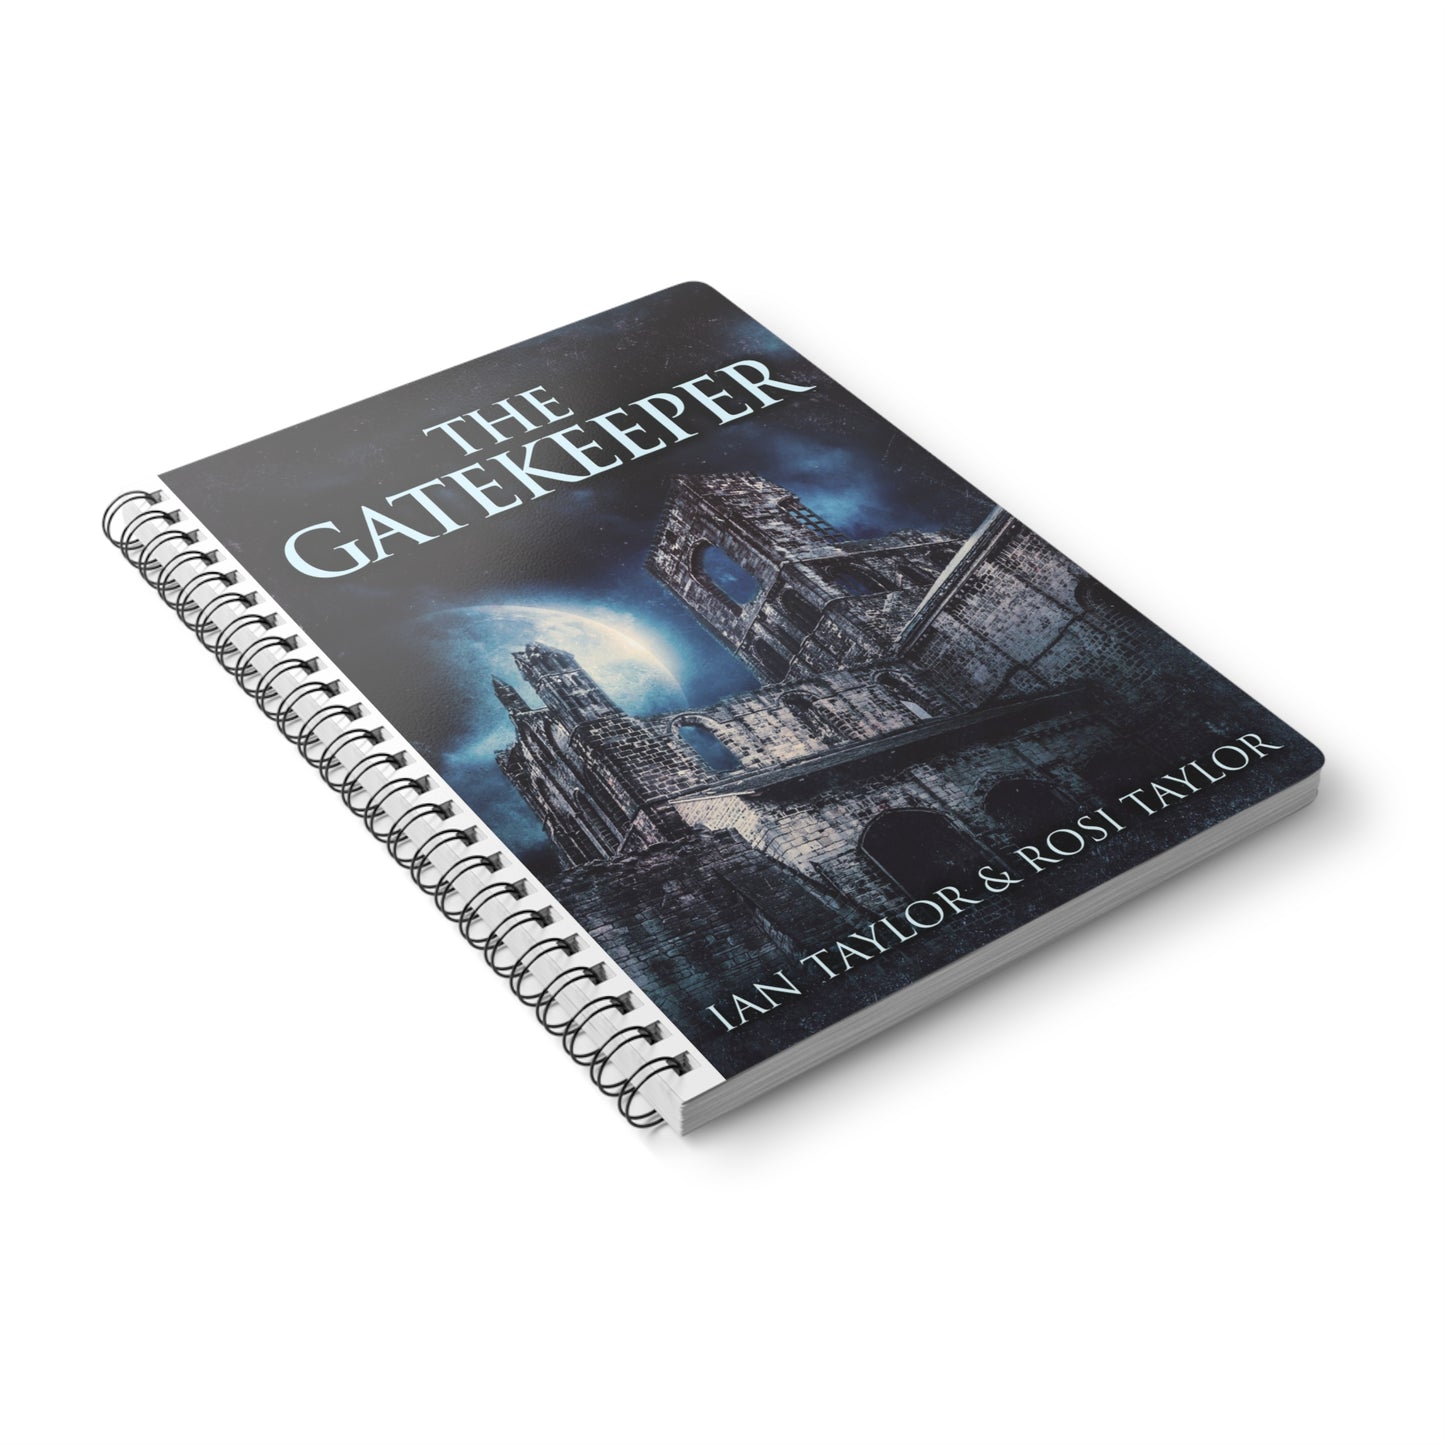 The Gatekeeper - A5 Wirebound Notebook